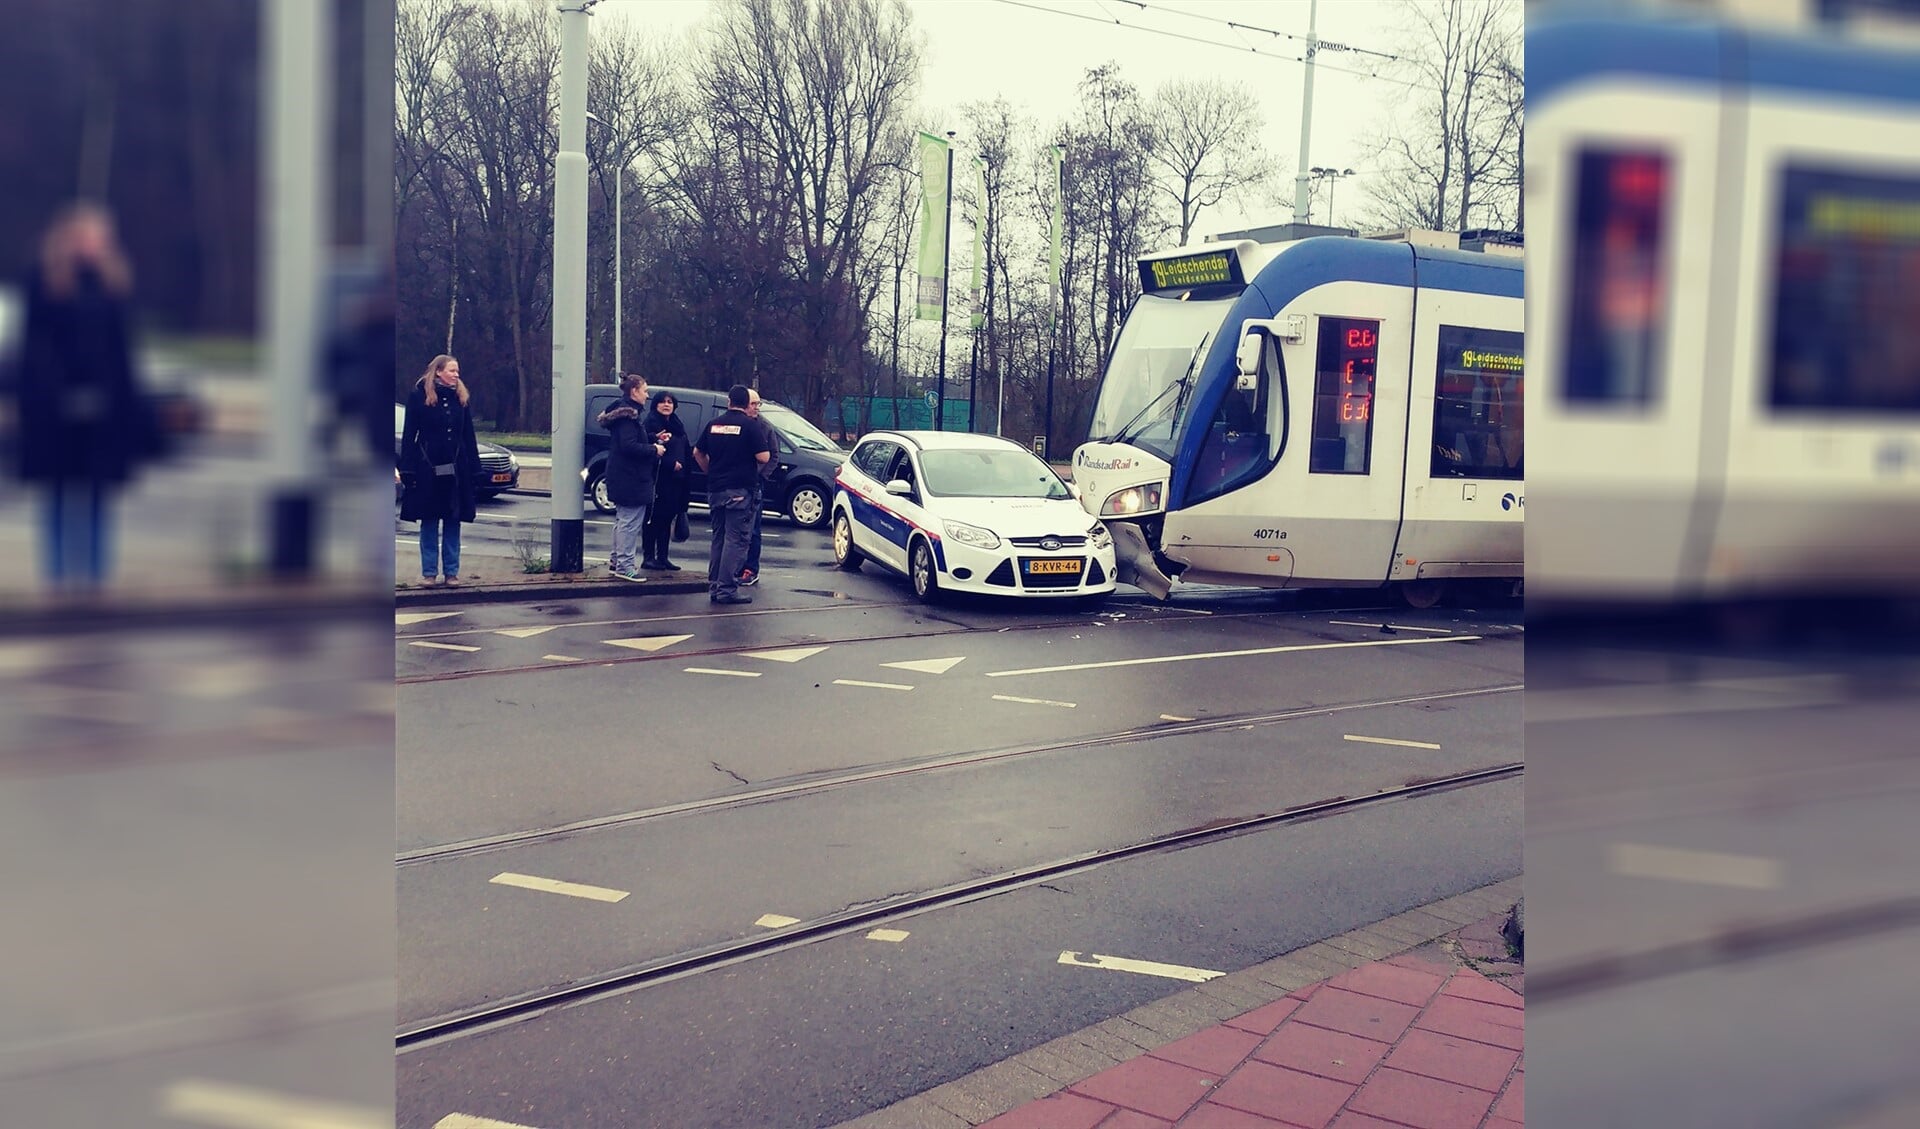 De tram en de personenauto liepen schade op bij de aanrijding (foto: twitter dinelecoeur).